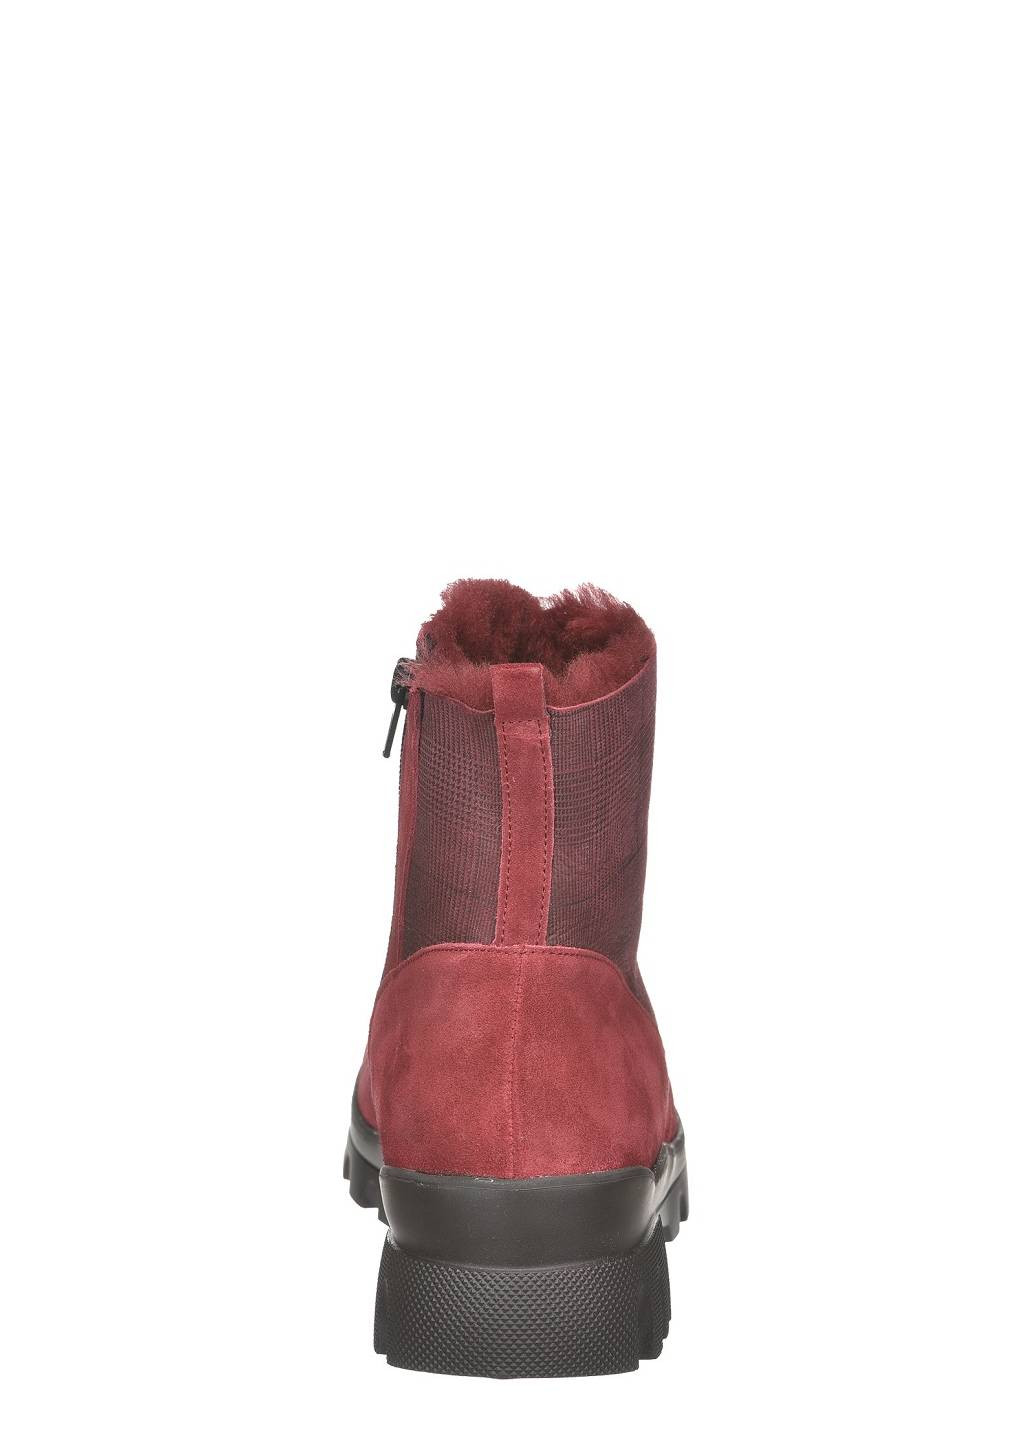 Зимние ботинки женские Waldlaufer без декора